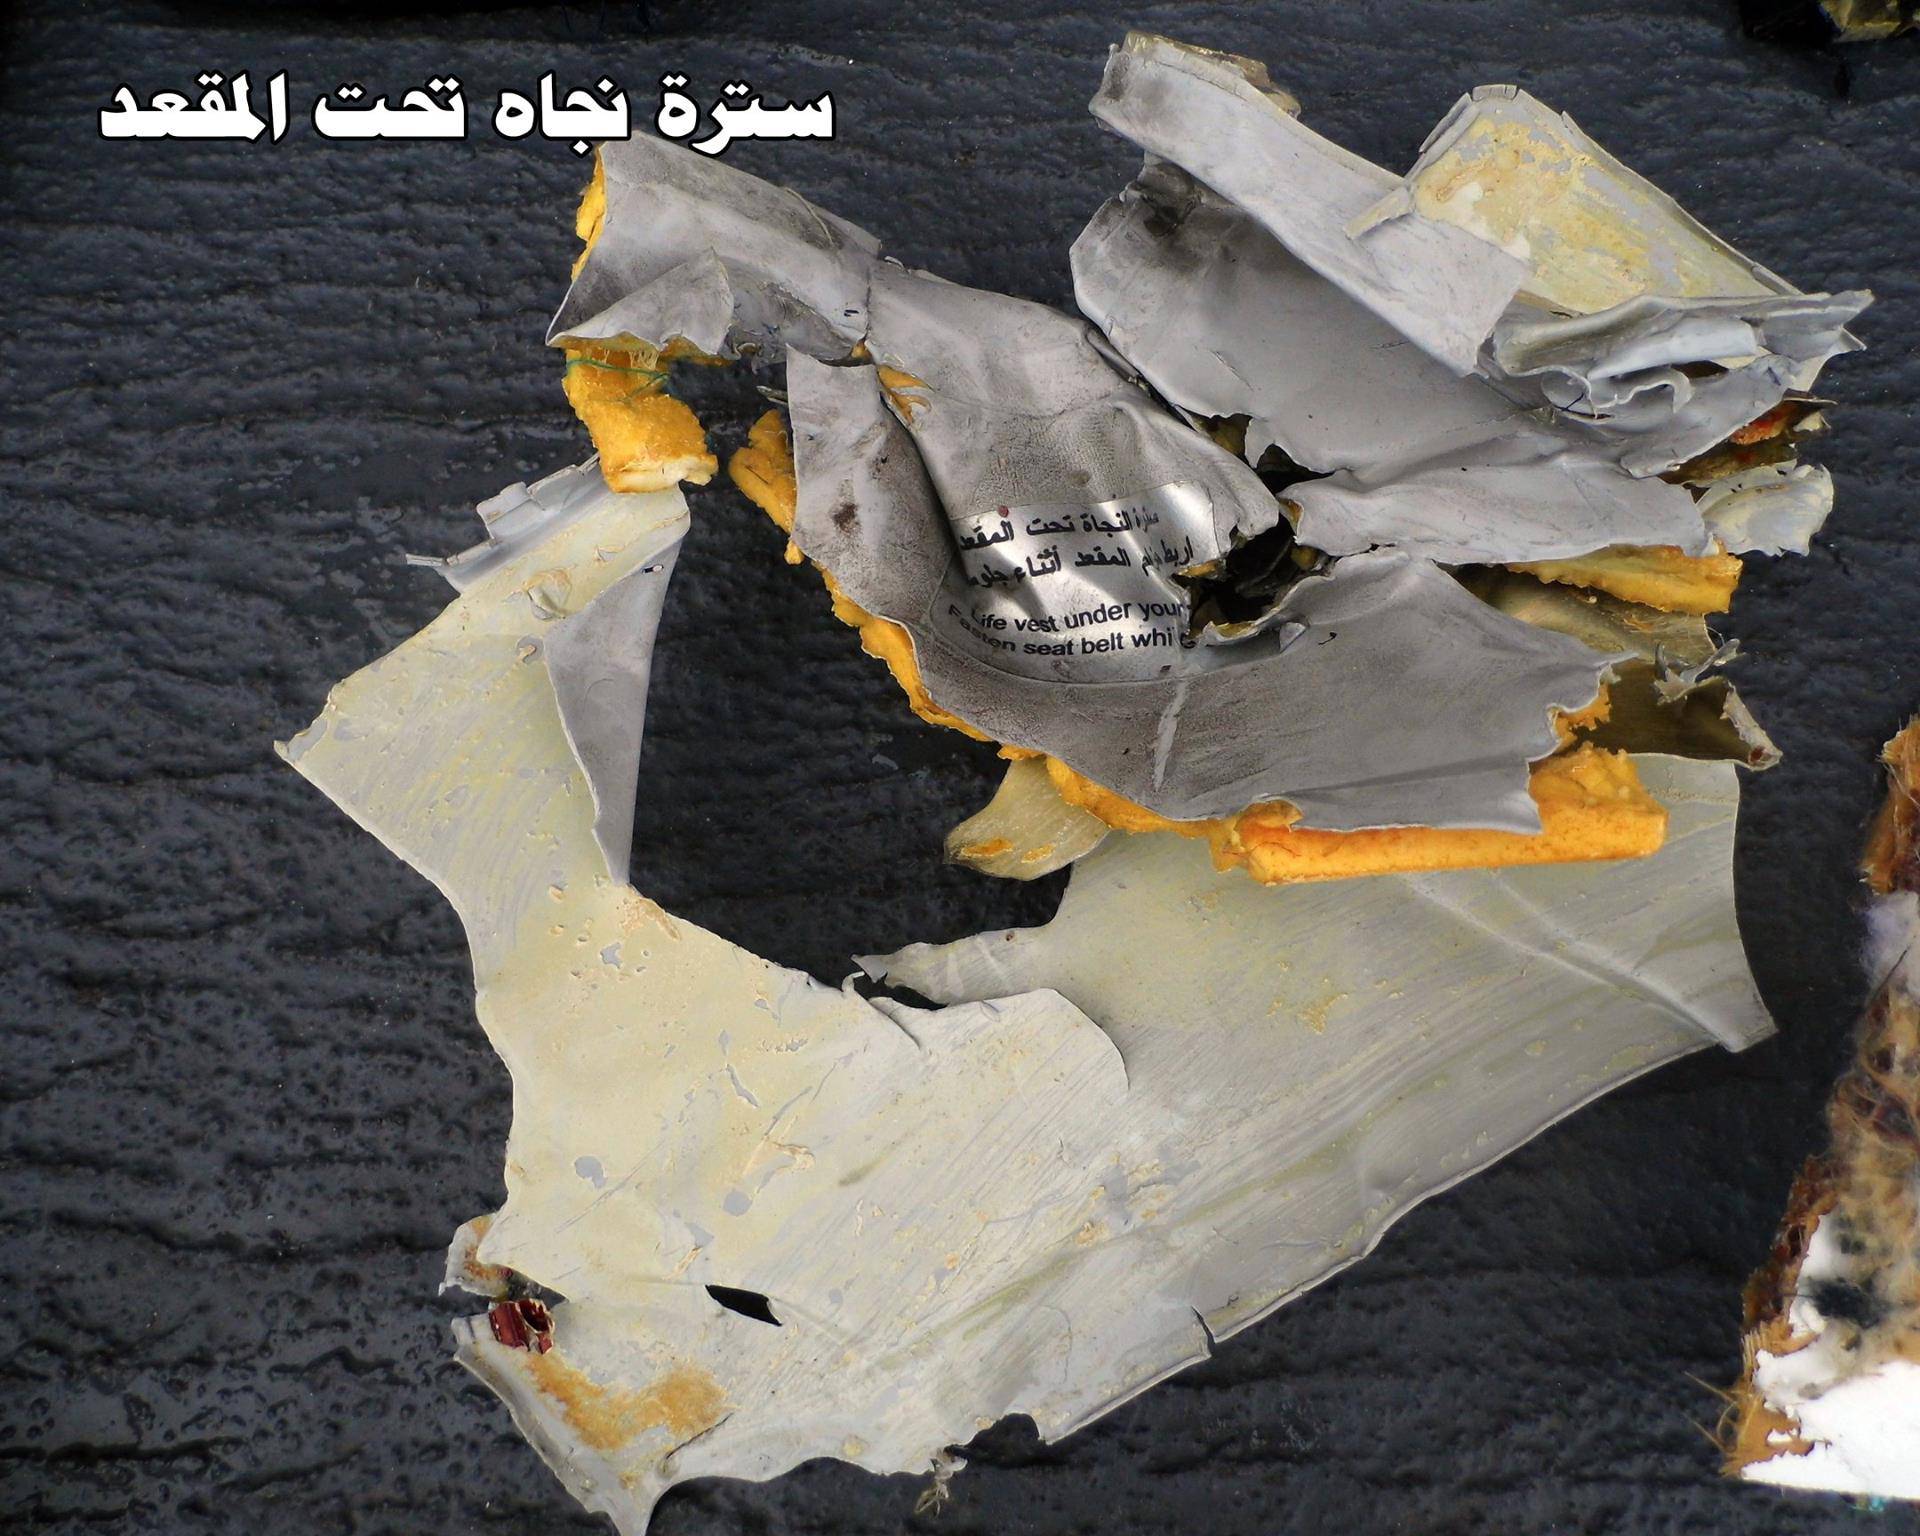 Hrvati su pronašli crnu kutiju palog egipatskog zrakoplova